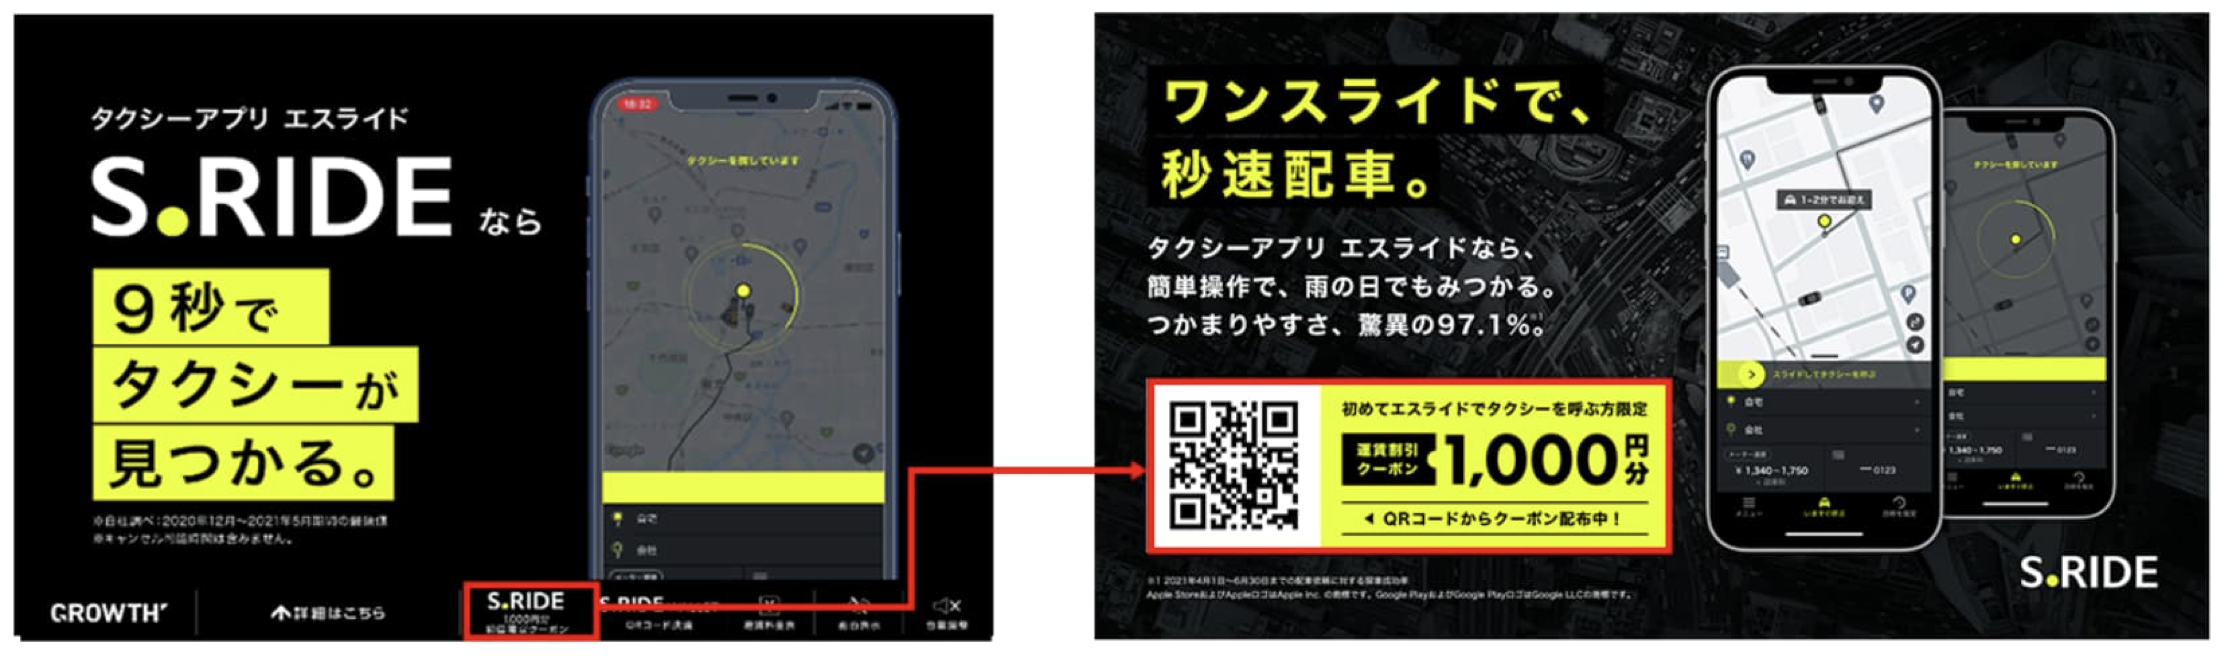 仙台で使えるタクシーアプリとクーポン情報